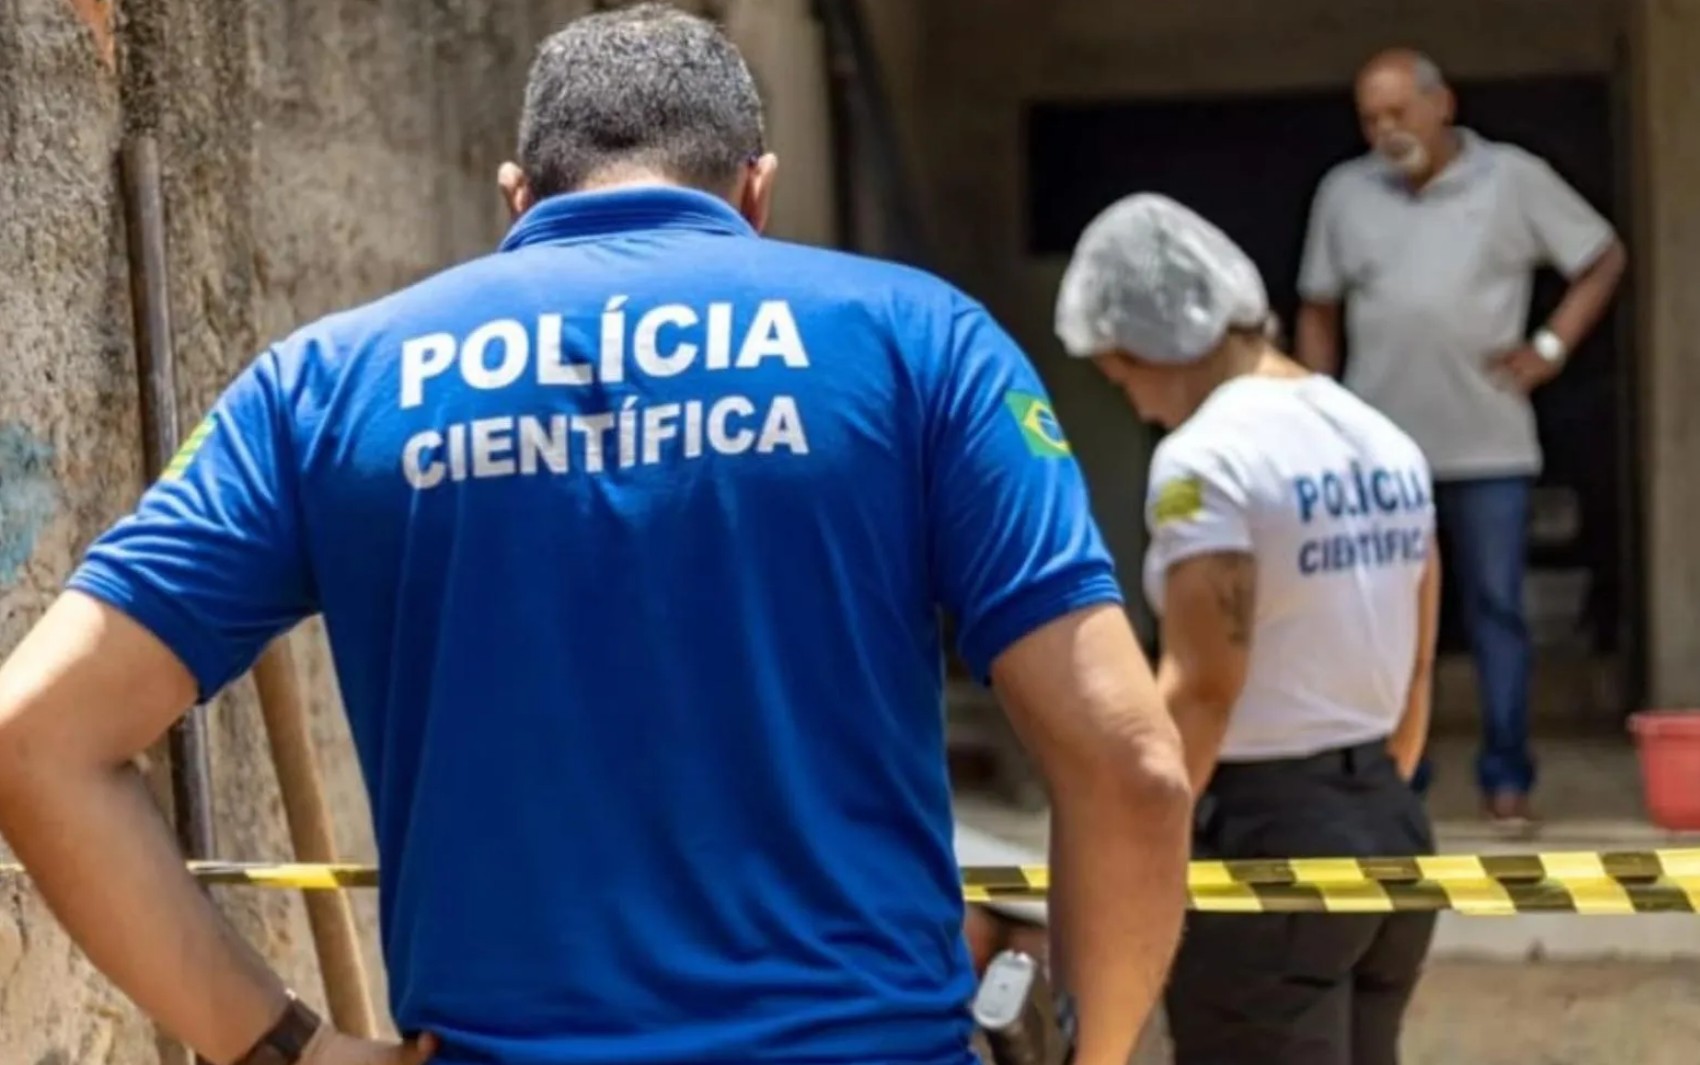 Concurso da Polícia Científica com salários de R$ 12 mil: inscrições terminam nesta segunda-feira 